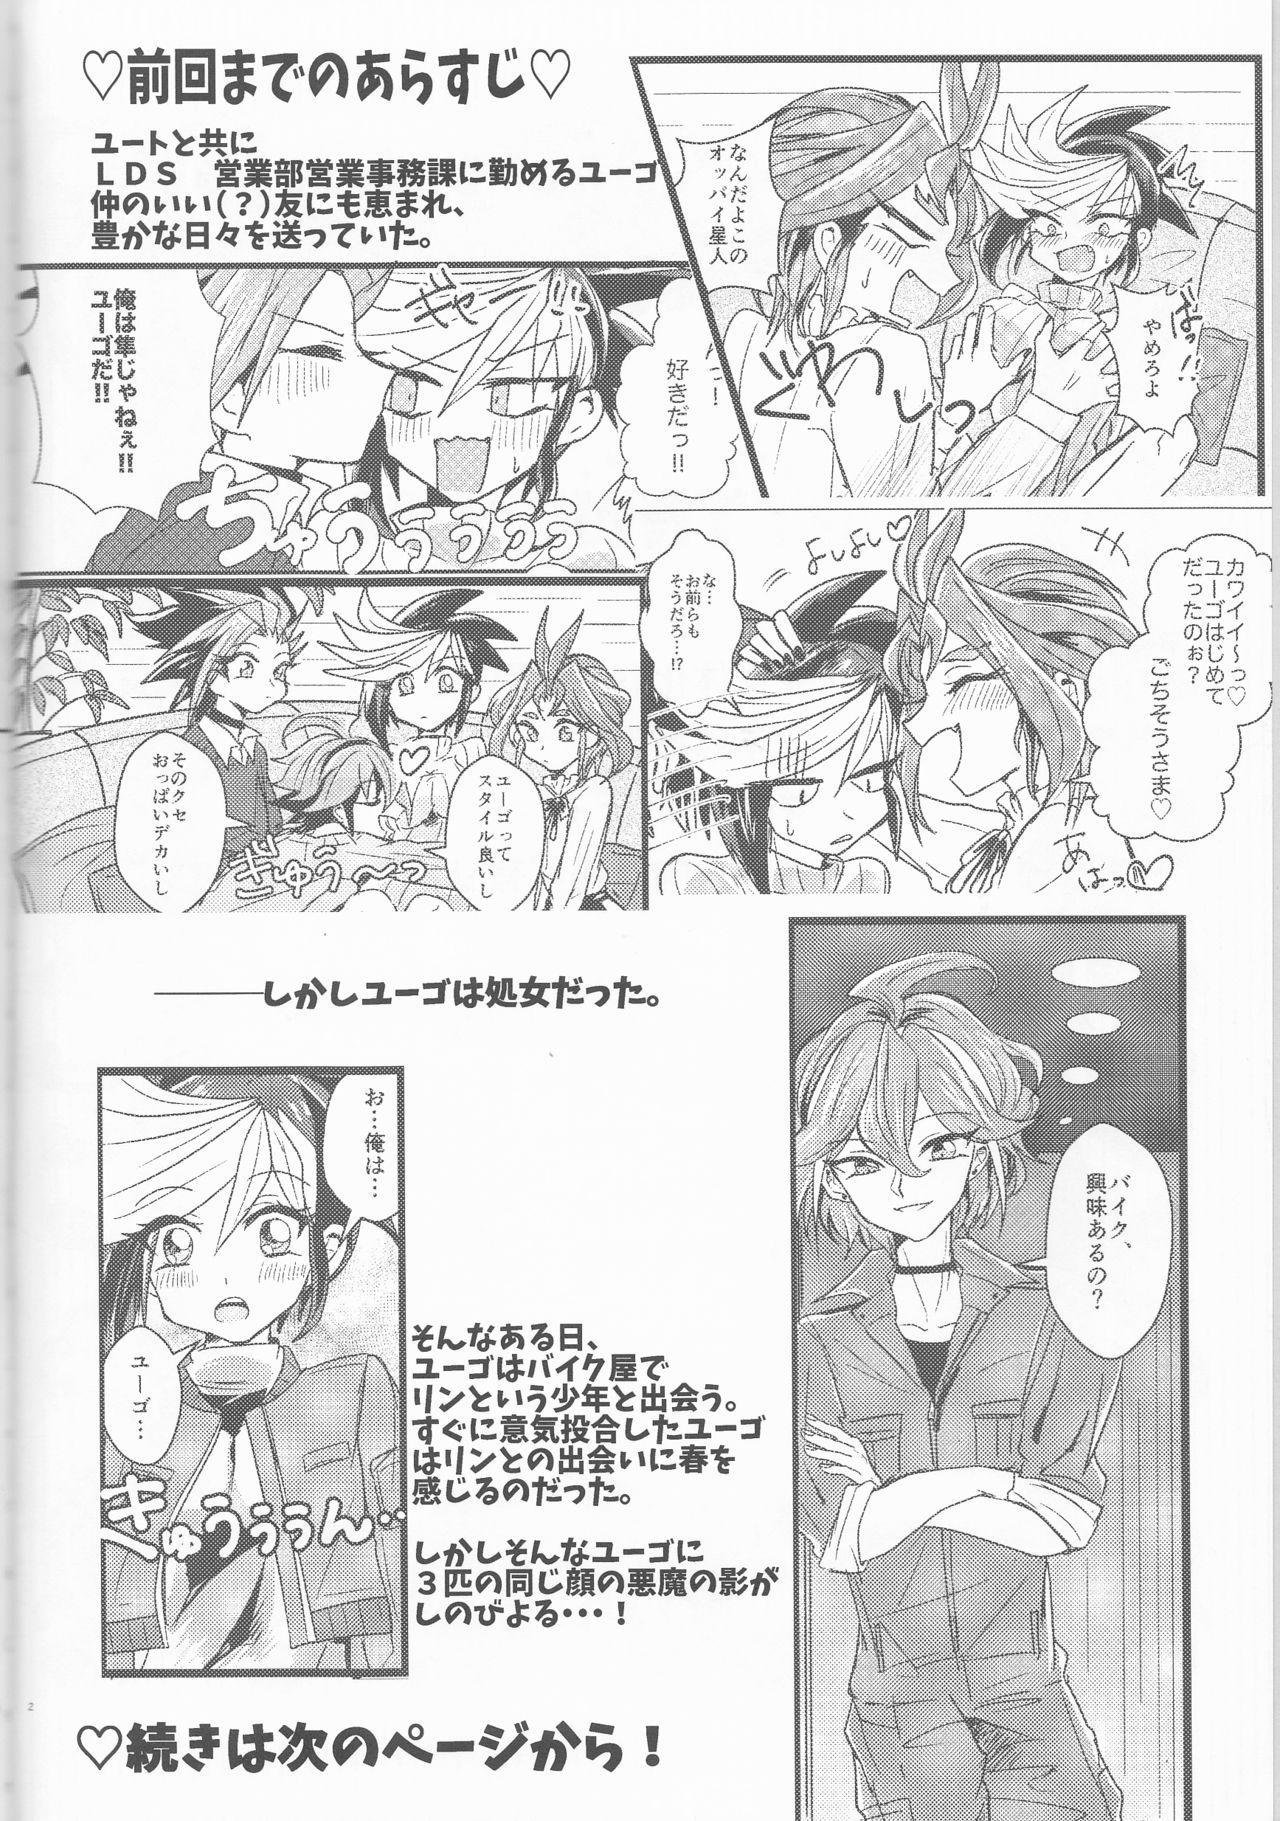 Porn LDS Hishoka no Himitsu II - Yu-gi-oh arc-v Dick - Page 3